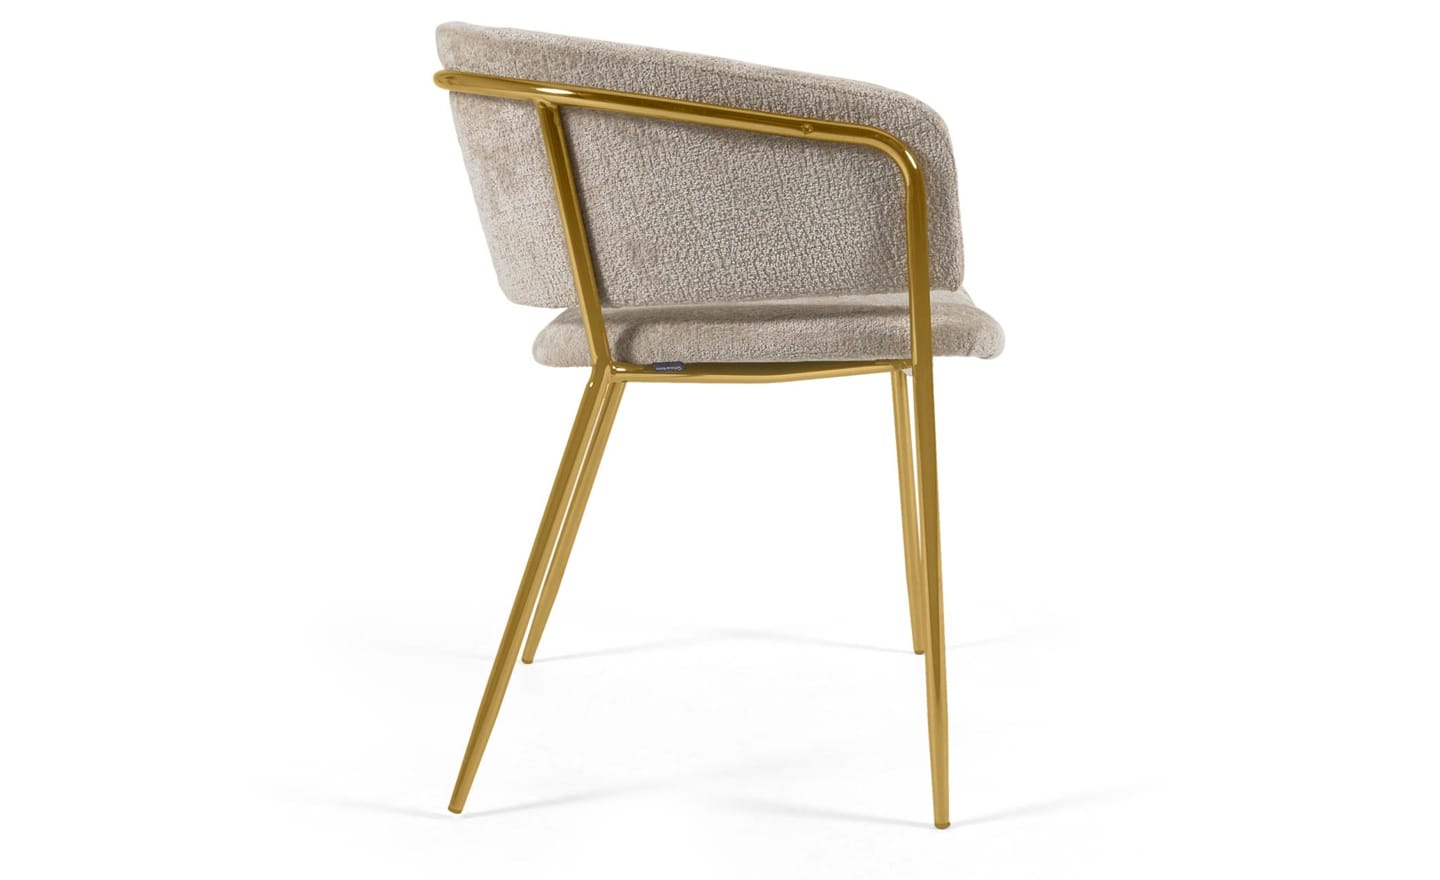 Cadeira Runnie Chenille Bege, estofada em chenille de pelo bege, pernas de metal dourado. Design excepcional de luxo e conforto.